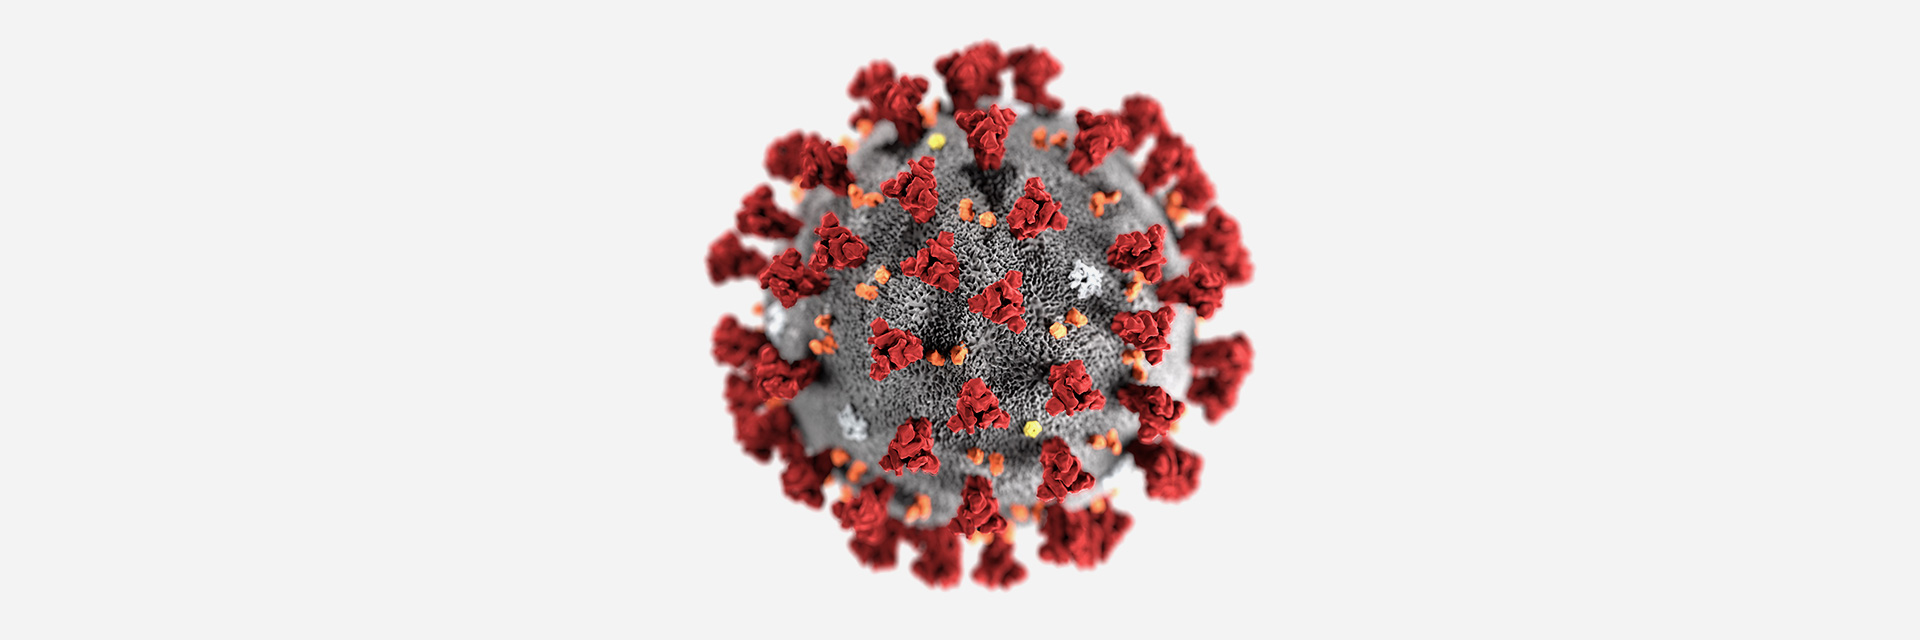 新冠病毒肺炎疫情/Coronavirus做口罩出口，一些可以用于邮件或开发信中的产品英文描述